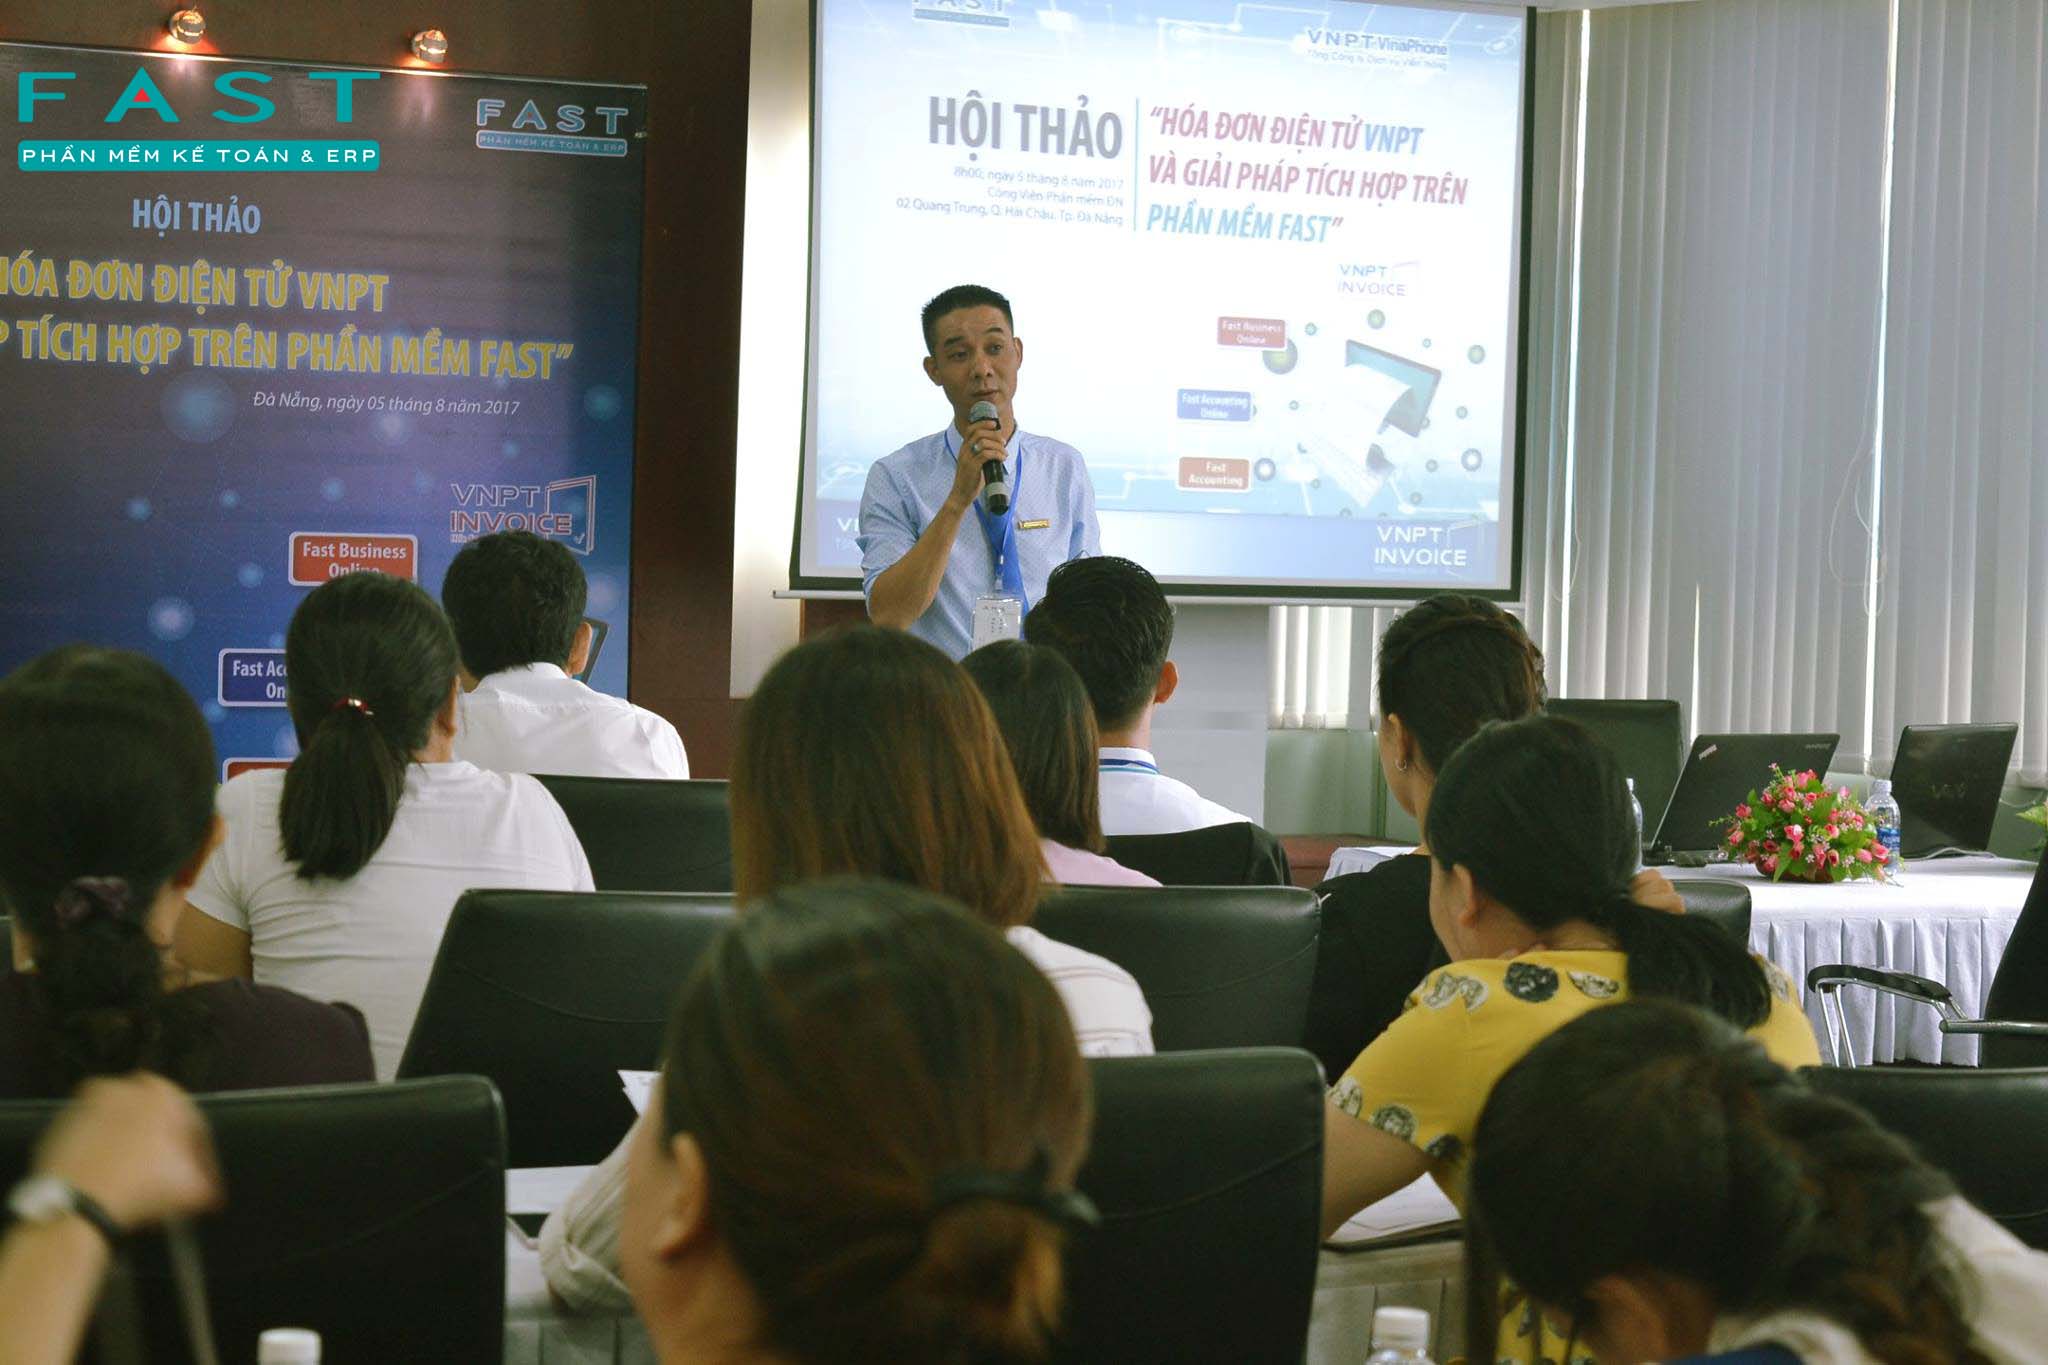 anh Trần Quang Hưng - Giám đốc khối giải pháp Doanh nghiệp VNPT - Trung tâm hỗ trợ bán hàng miền Trung giới thiệu về HĐ ĐT VNPT E-invoice và cách thức triển khai